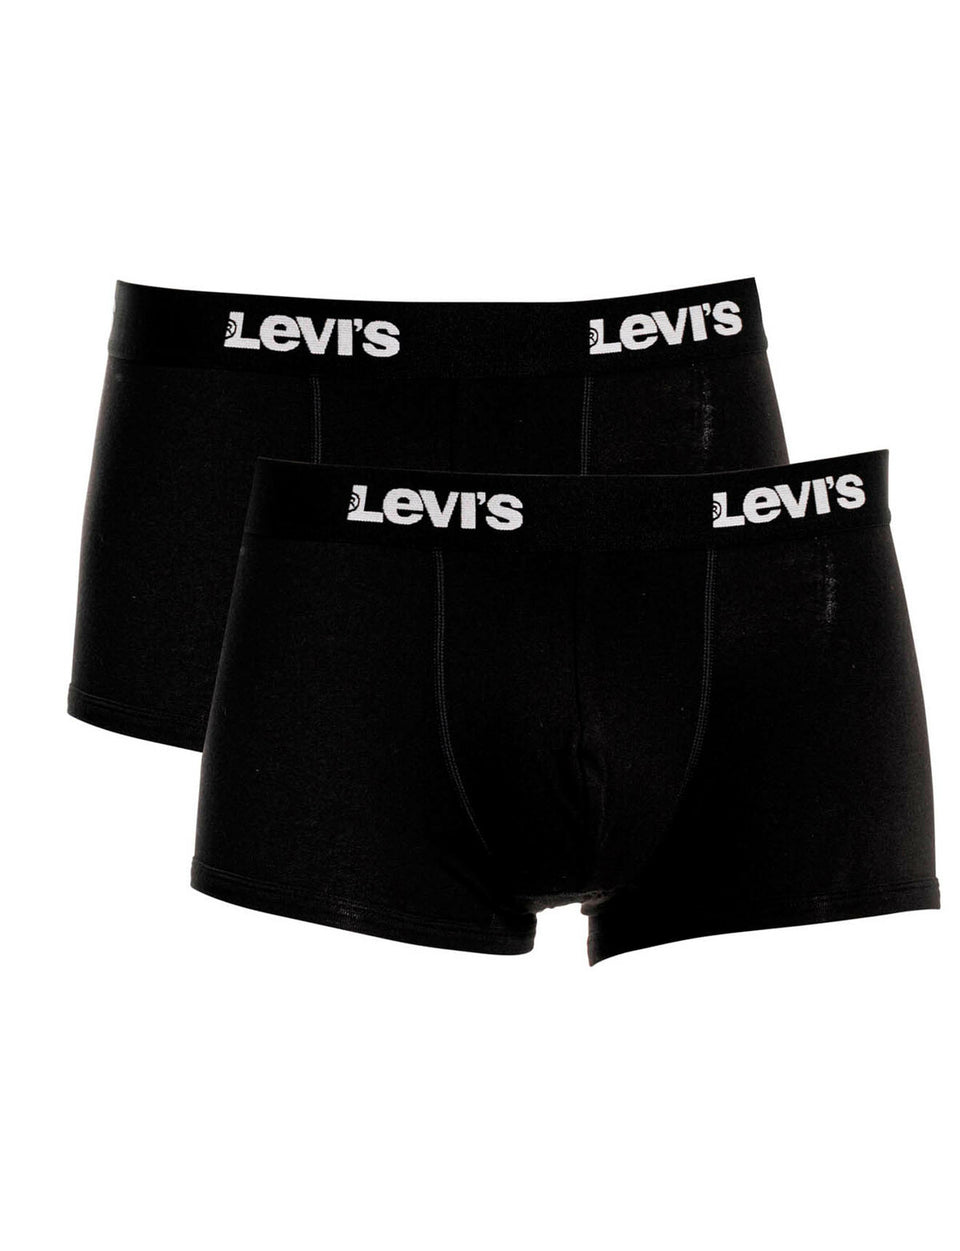 Levis Men's Solid Trunks Black